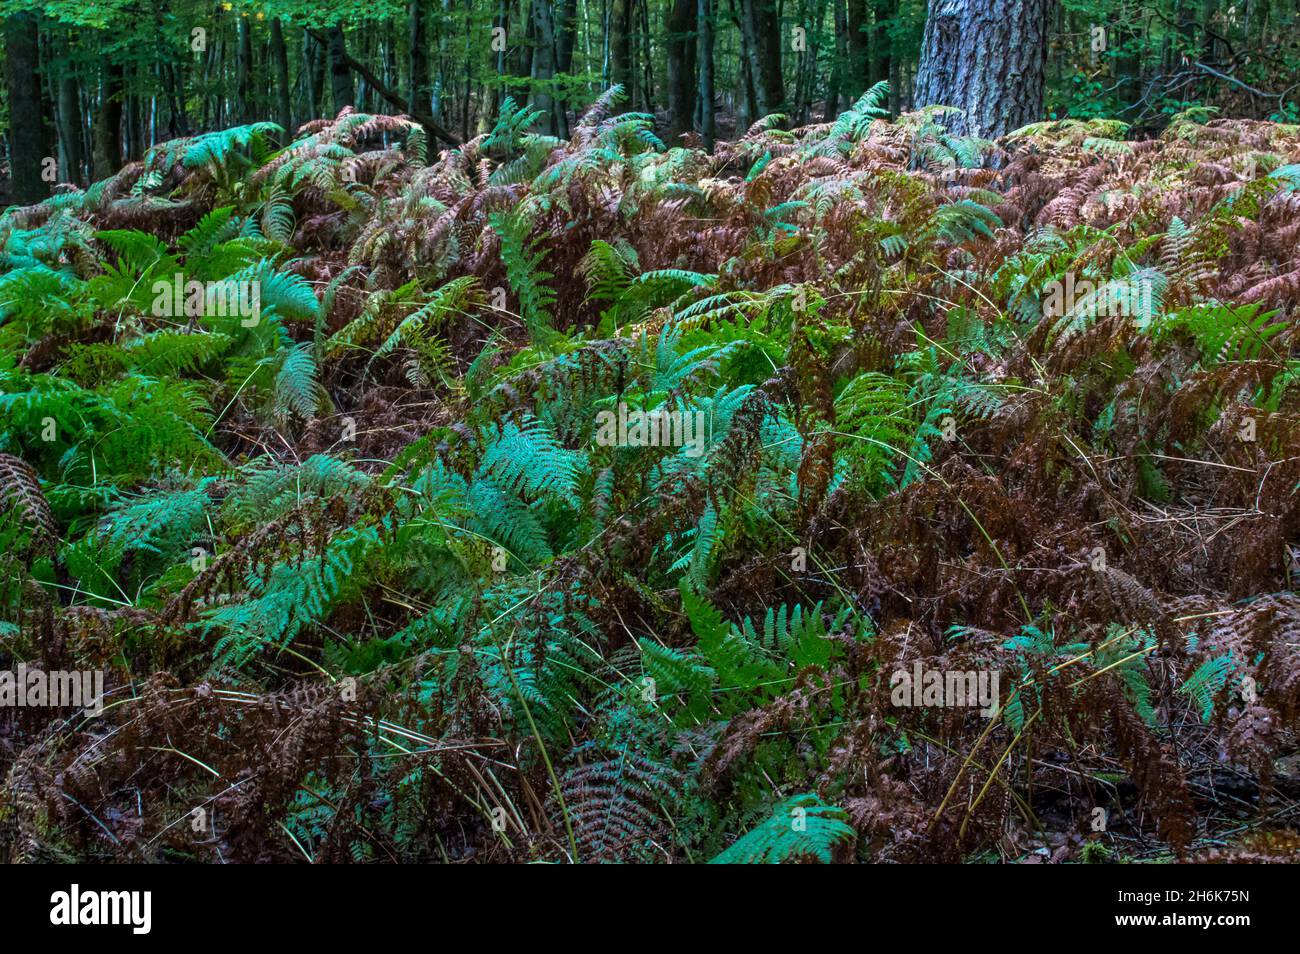 Waldspaziergang Bäume, Wurzeln, Blätter , Moos, Pilze und vieles mehr Stock Photo